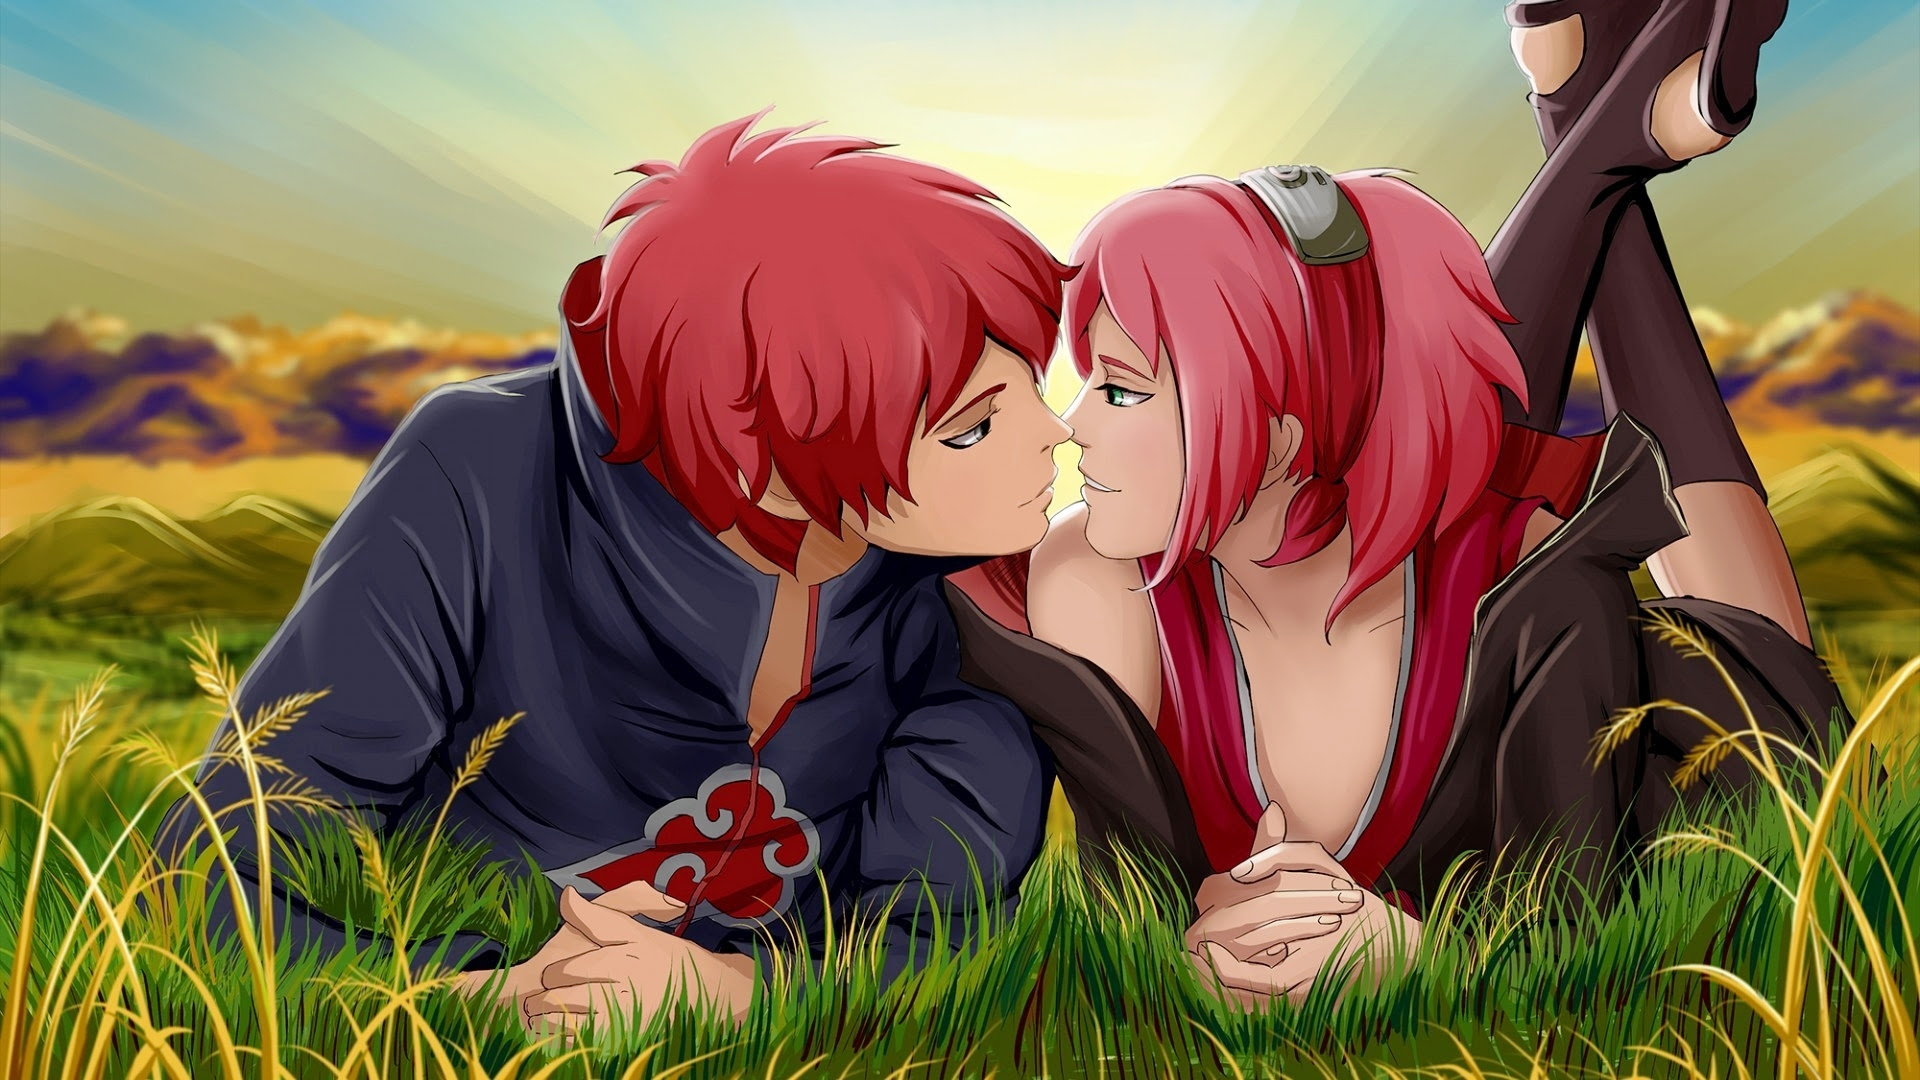 Cute Anime Couple Desktop Wallpapers | PixelsTalk.Net